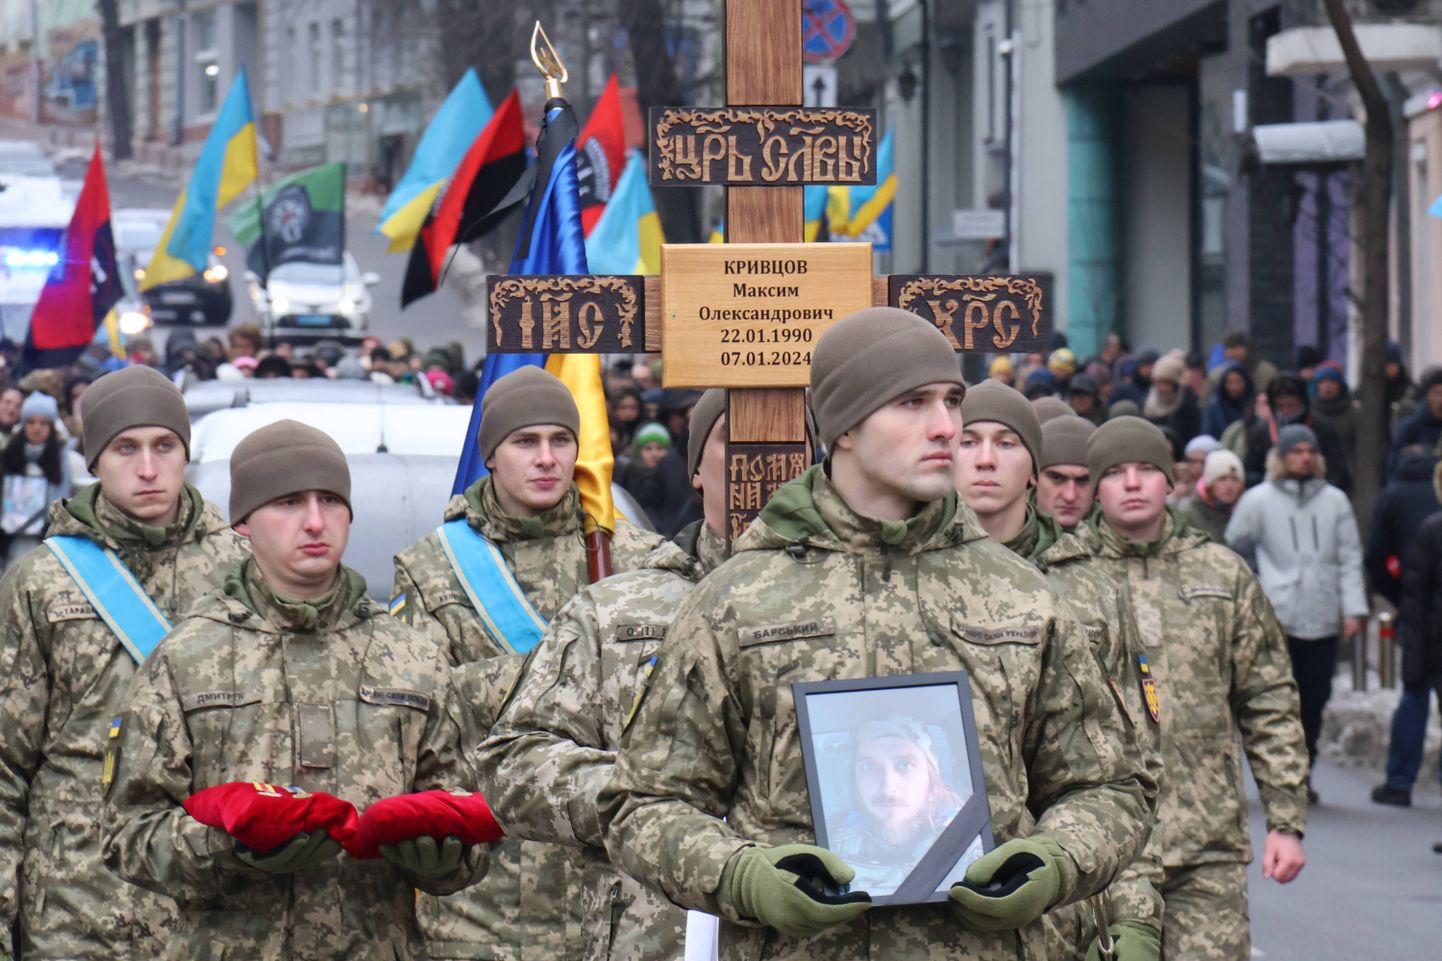 Ukraiņu dzejnieka un karavīra Maksima Krivcova (Dalī) bēres Kijivā. Krivcovs gāja bojā frontes līnijā 2024. gada 7. janvārī.